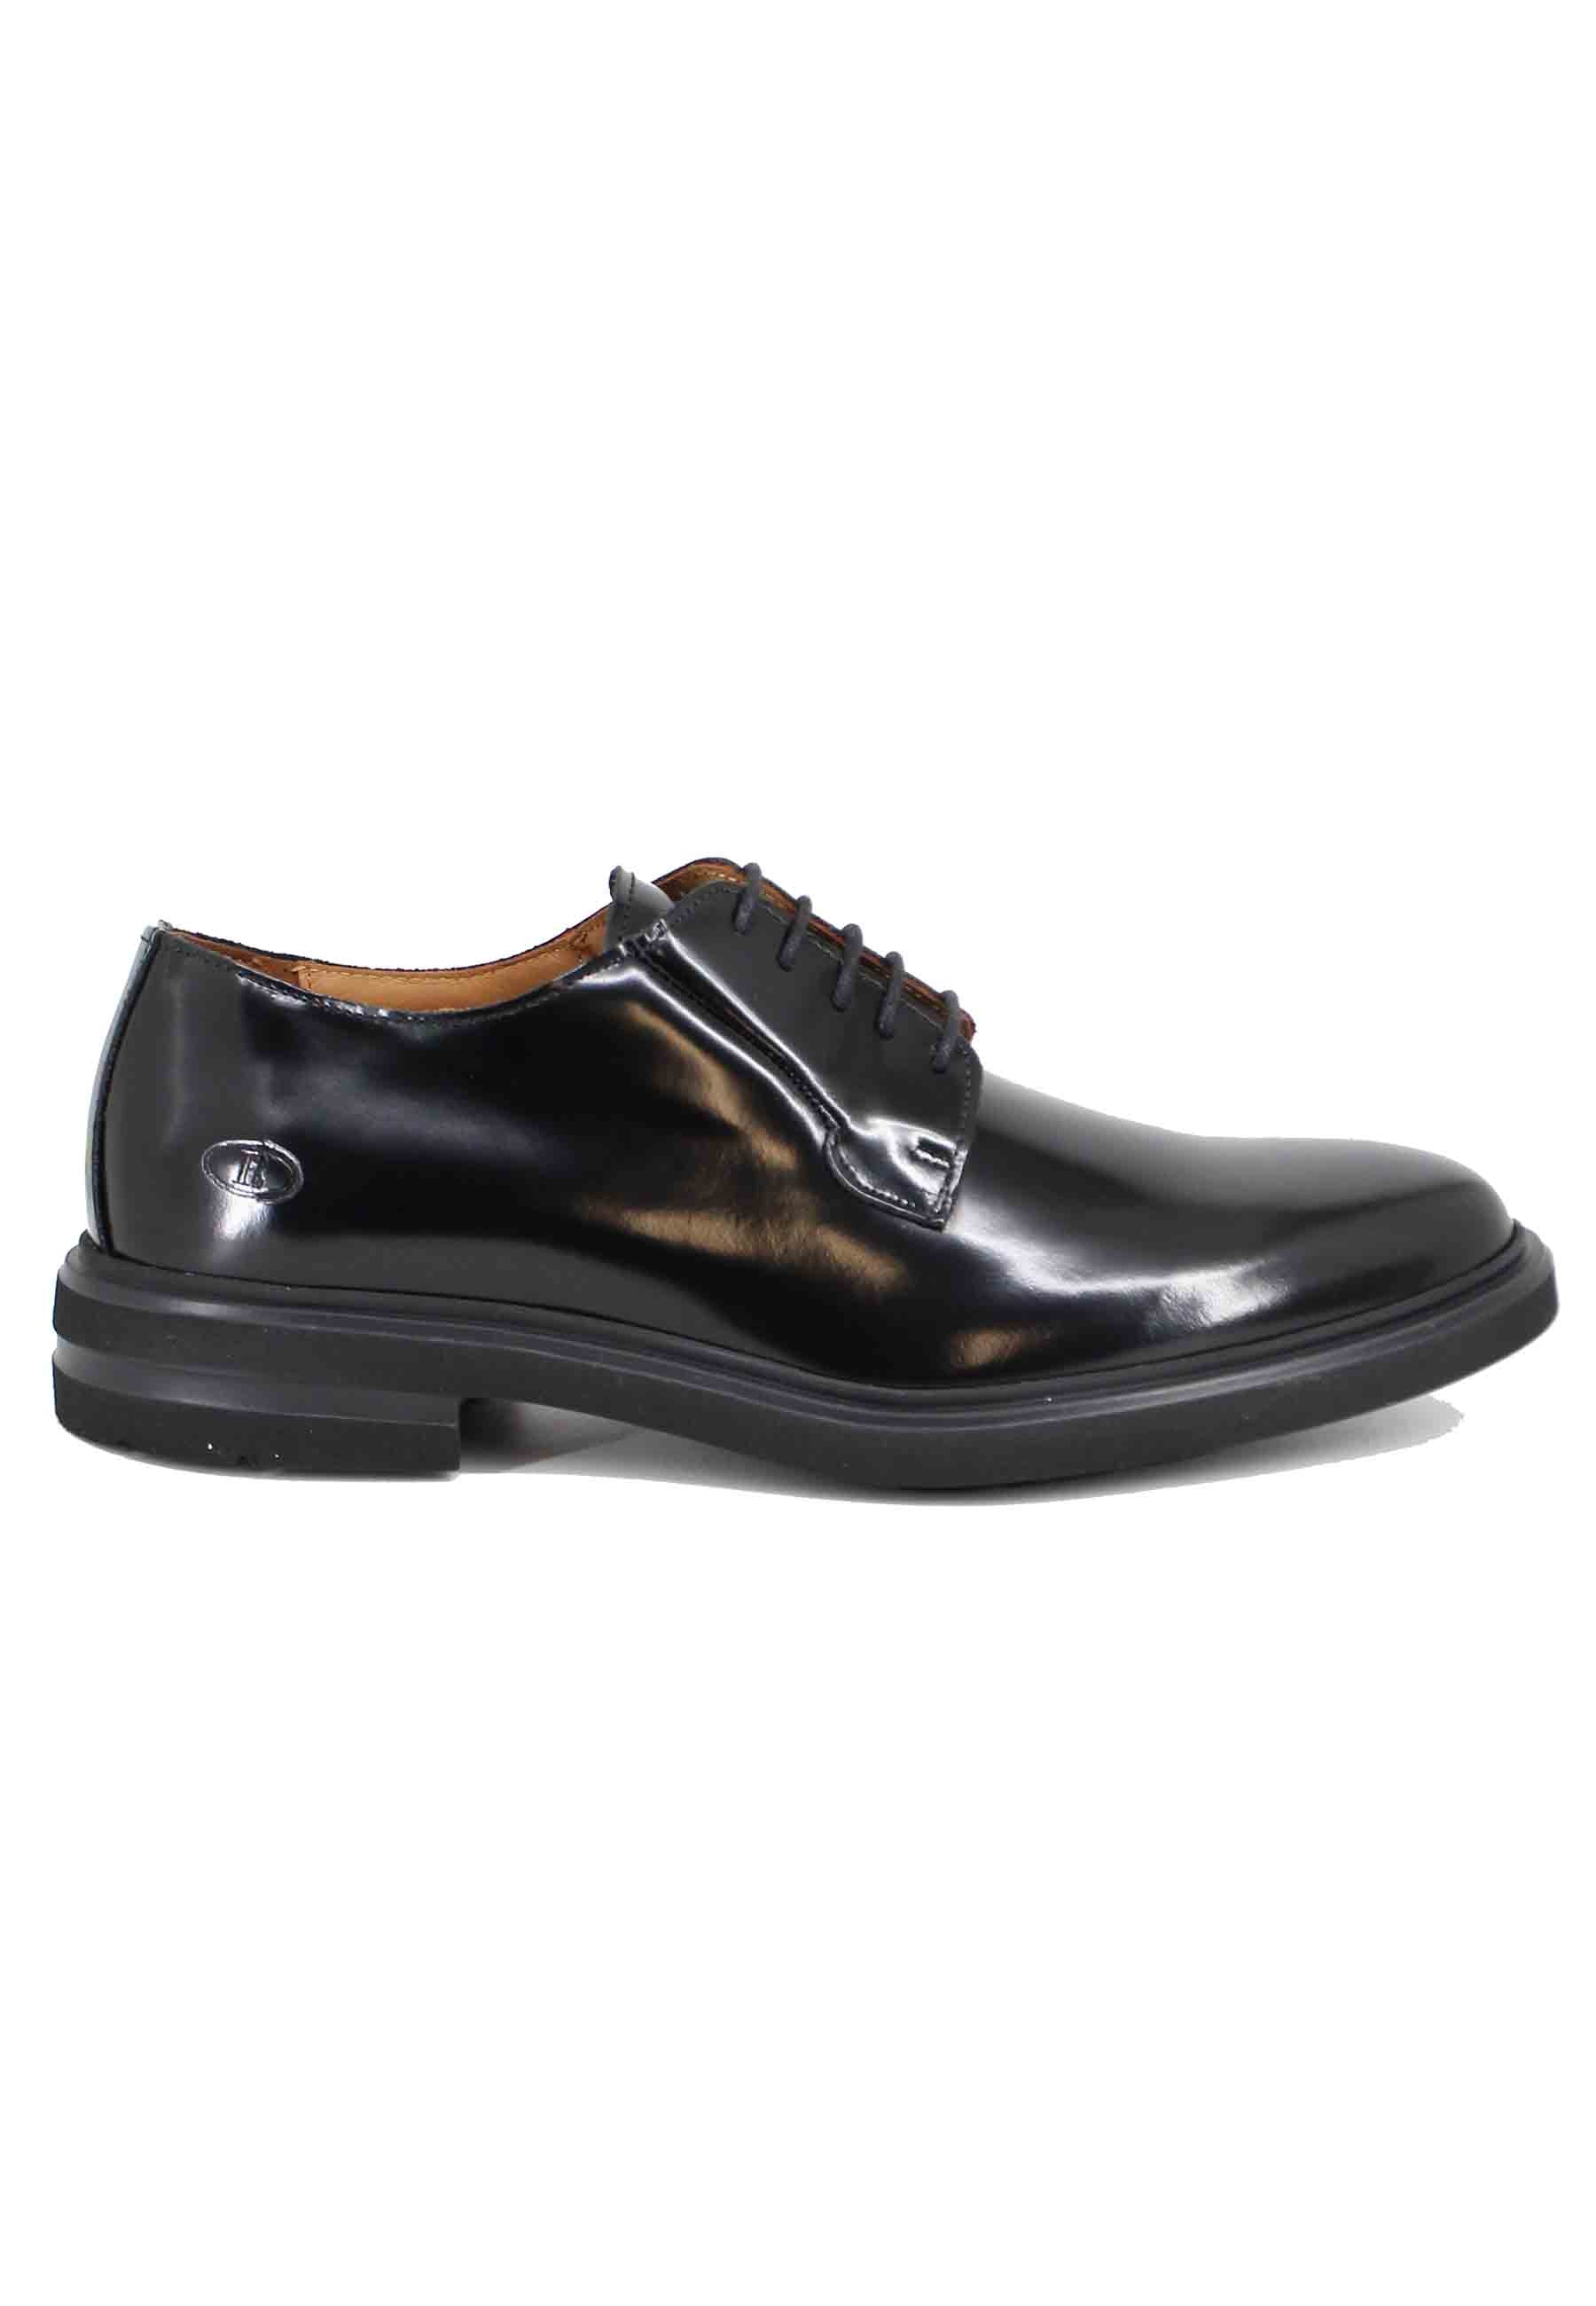 Chaussures à lacets pour hommes en cuir noir avec semelle en caoutchouc